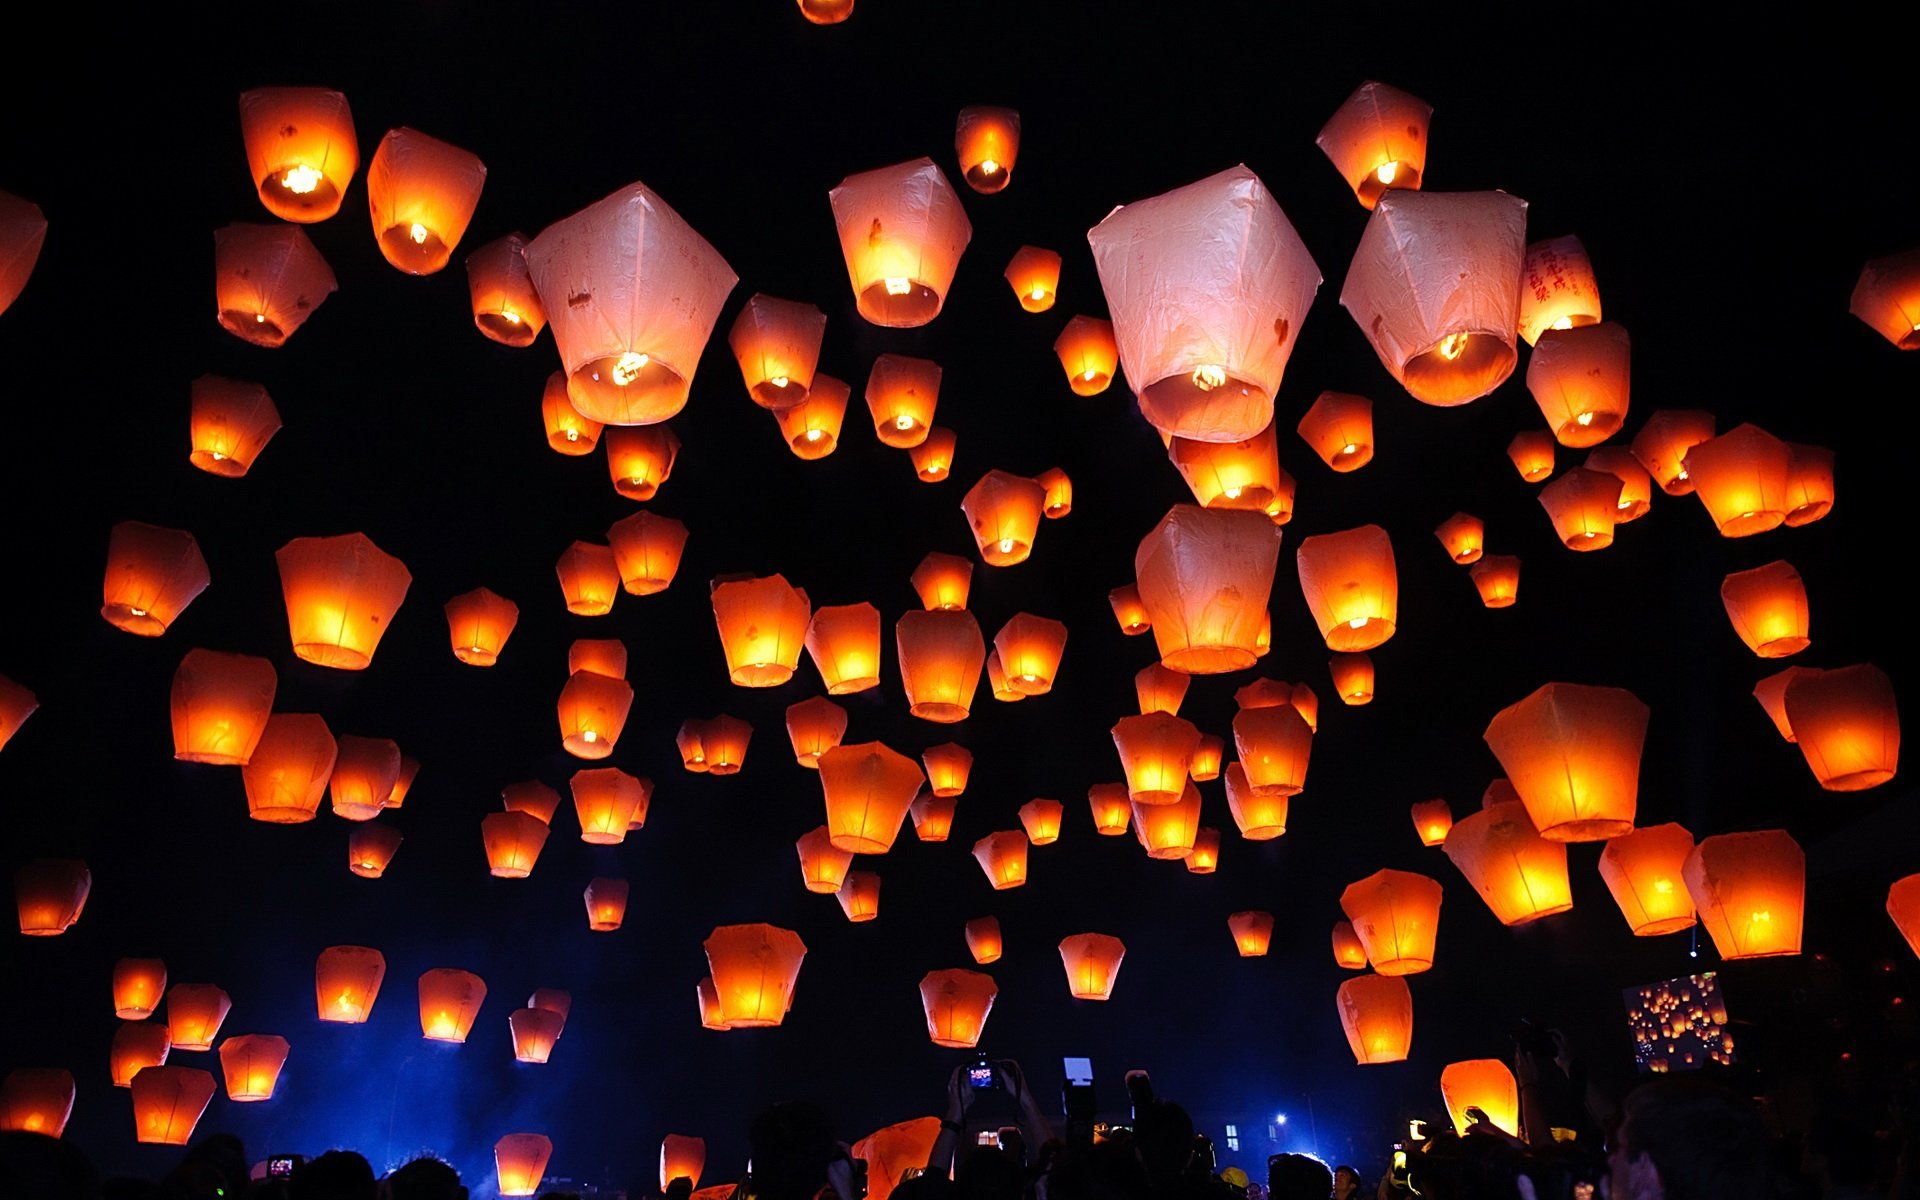 Китайские фонарики в небе